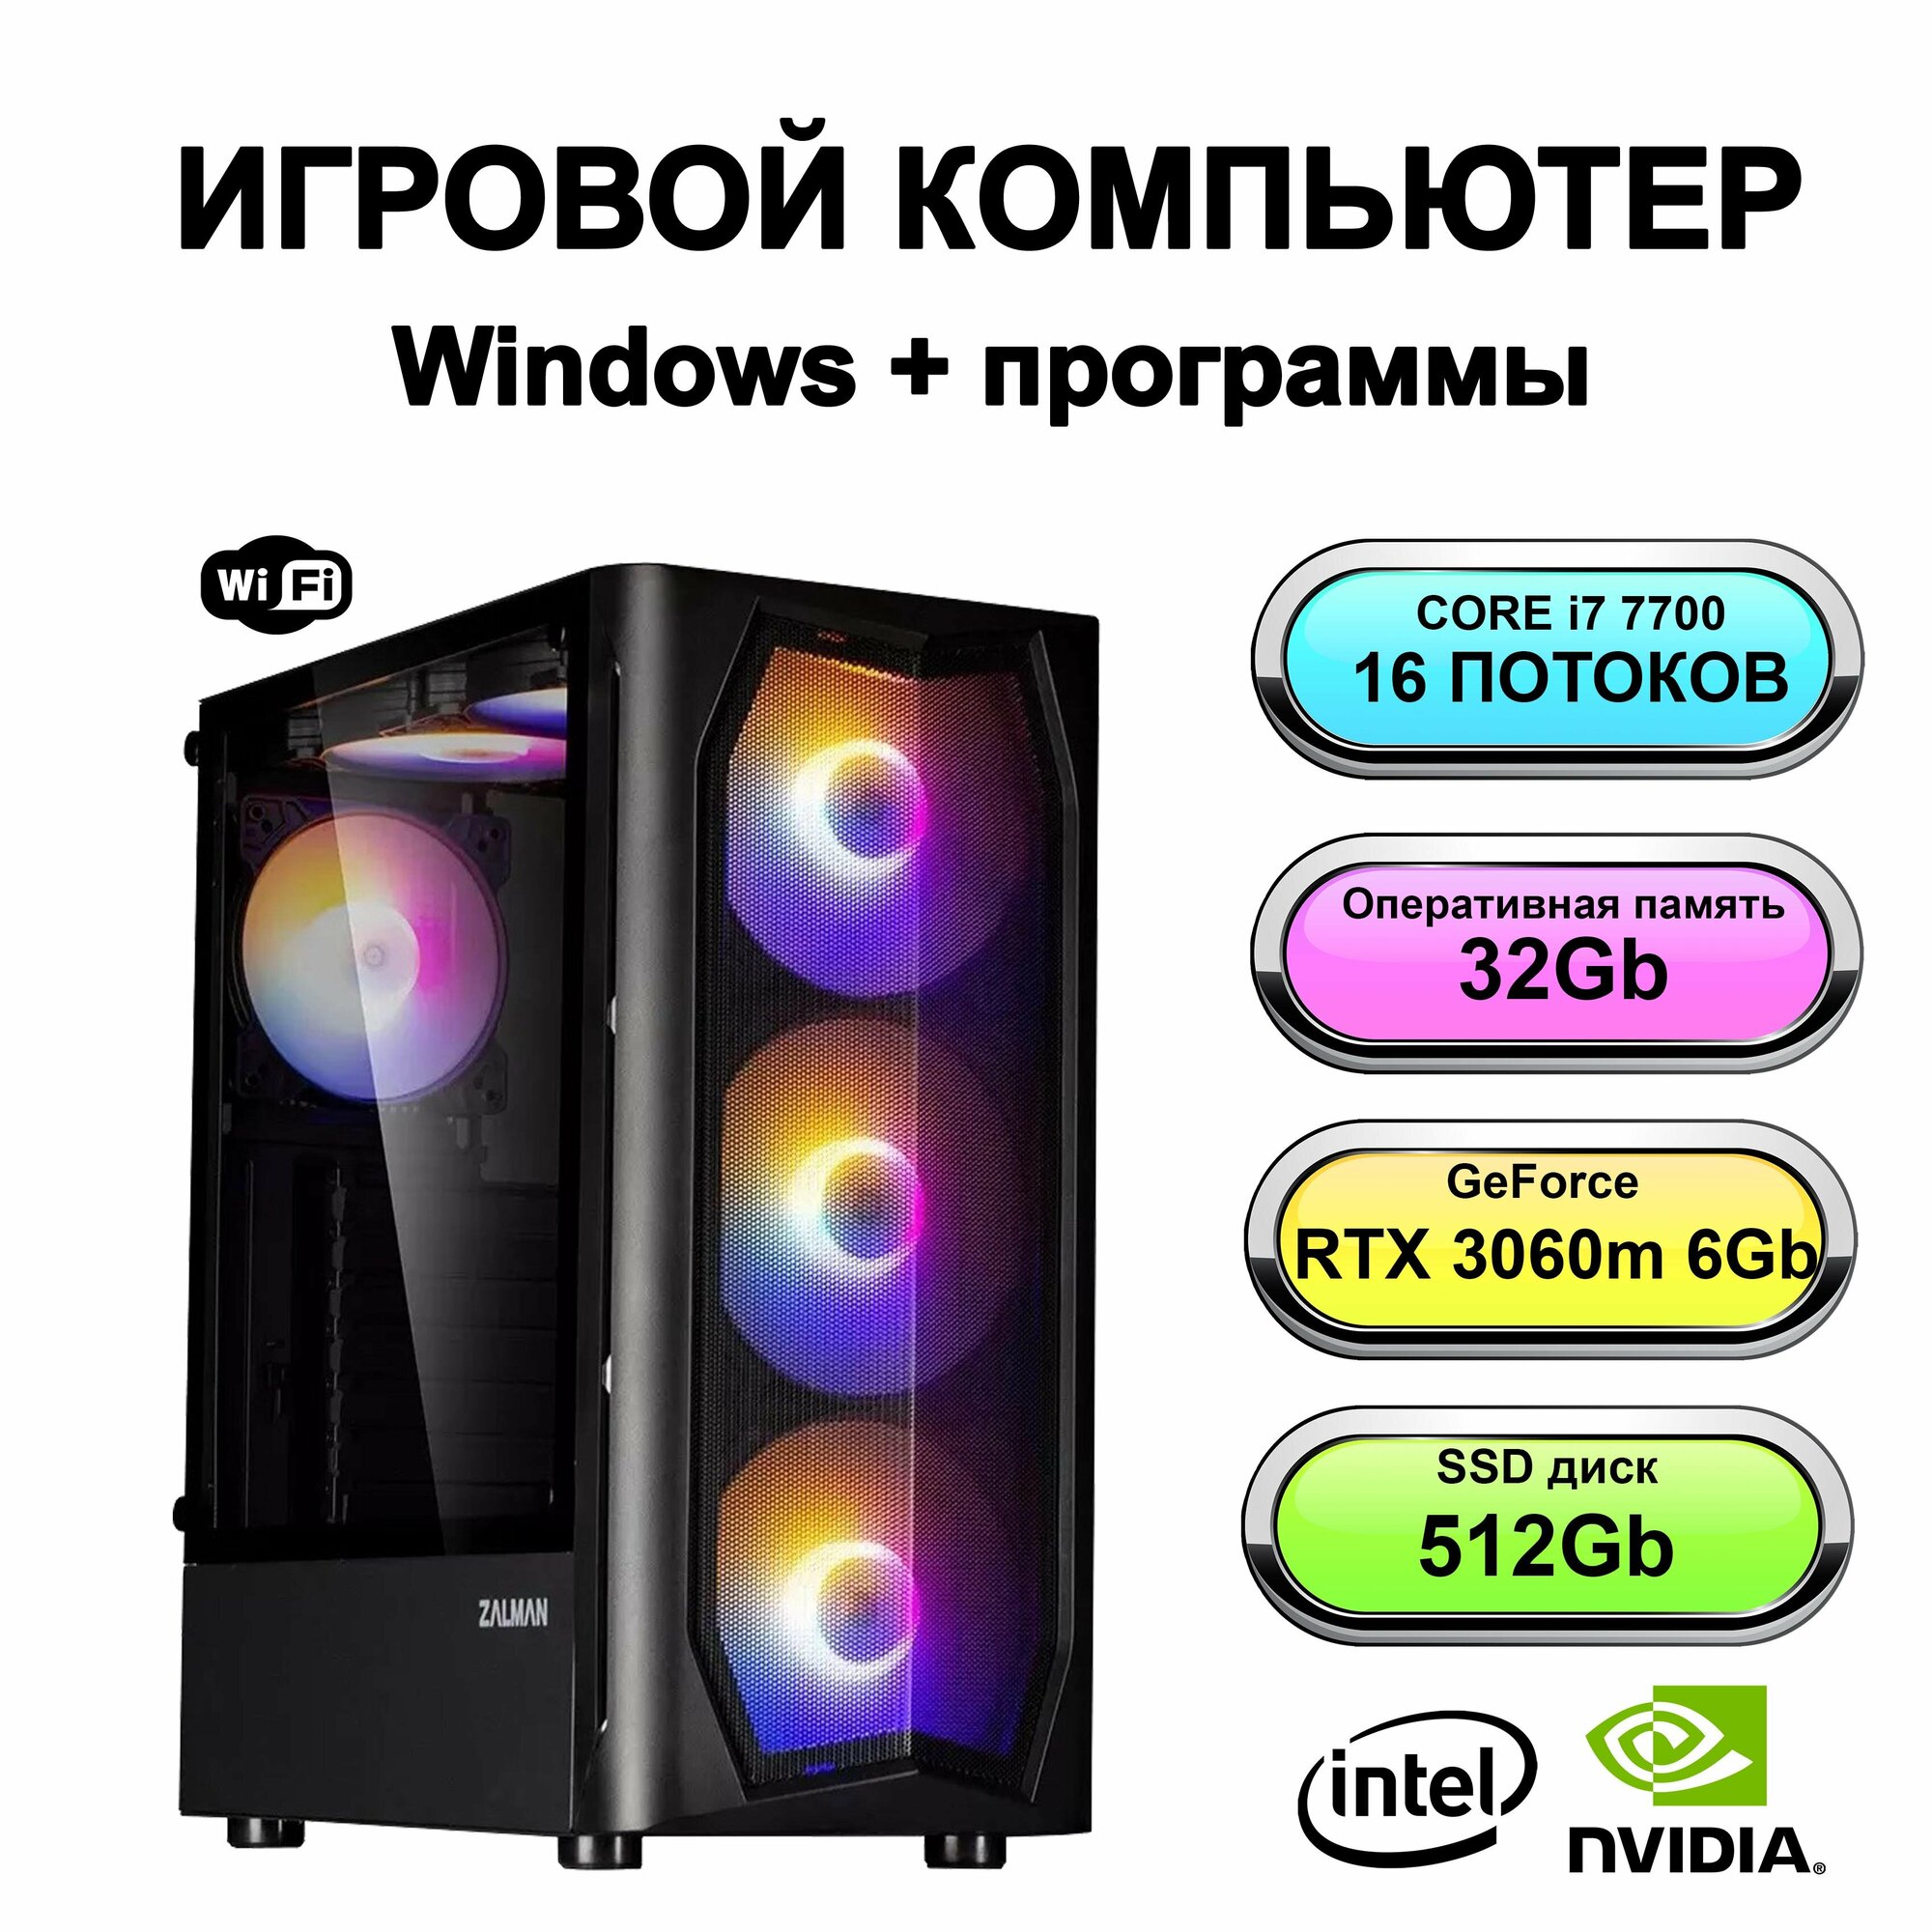 Игровой системный блок мощный игровой компьютер Intel Core i7 7700 (Intel Xeon E5-2650V2 (2.6 ГГц), RAM 32 ГБ, SSD 512 ГБ, NVIDIA GeForce RTX 3060m (6 Гб)